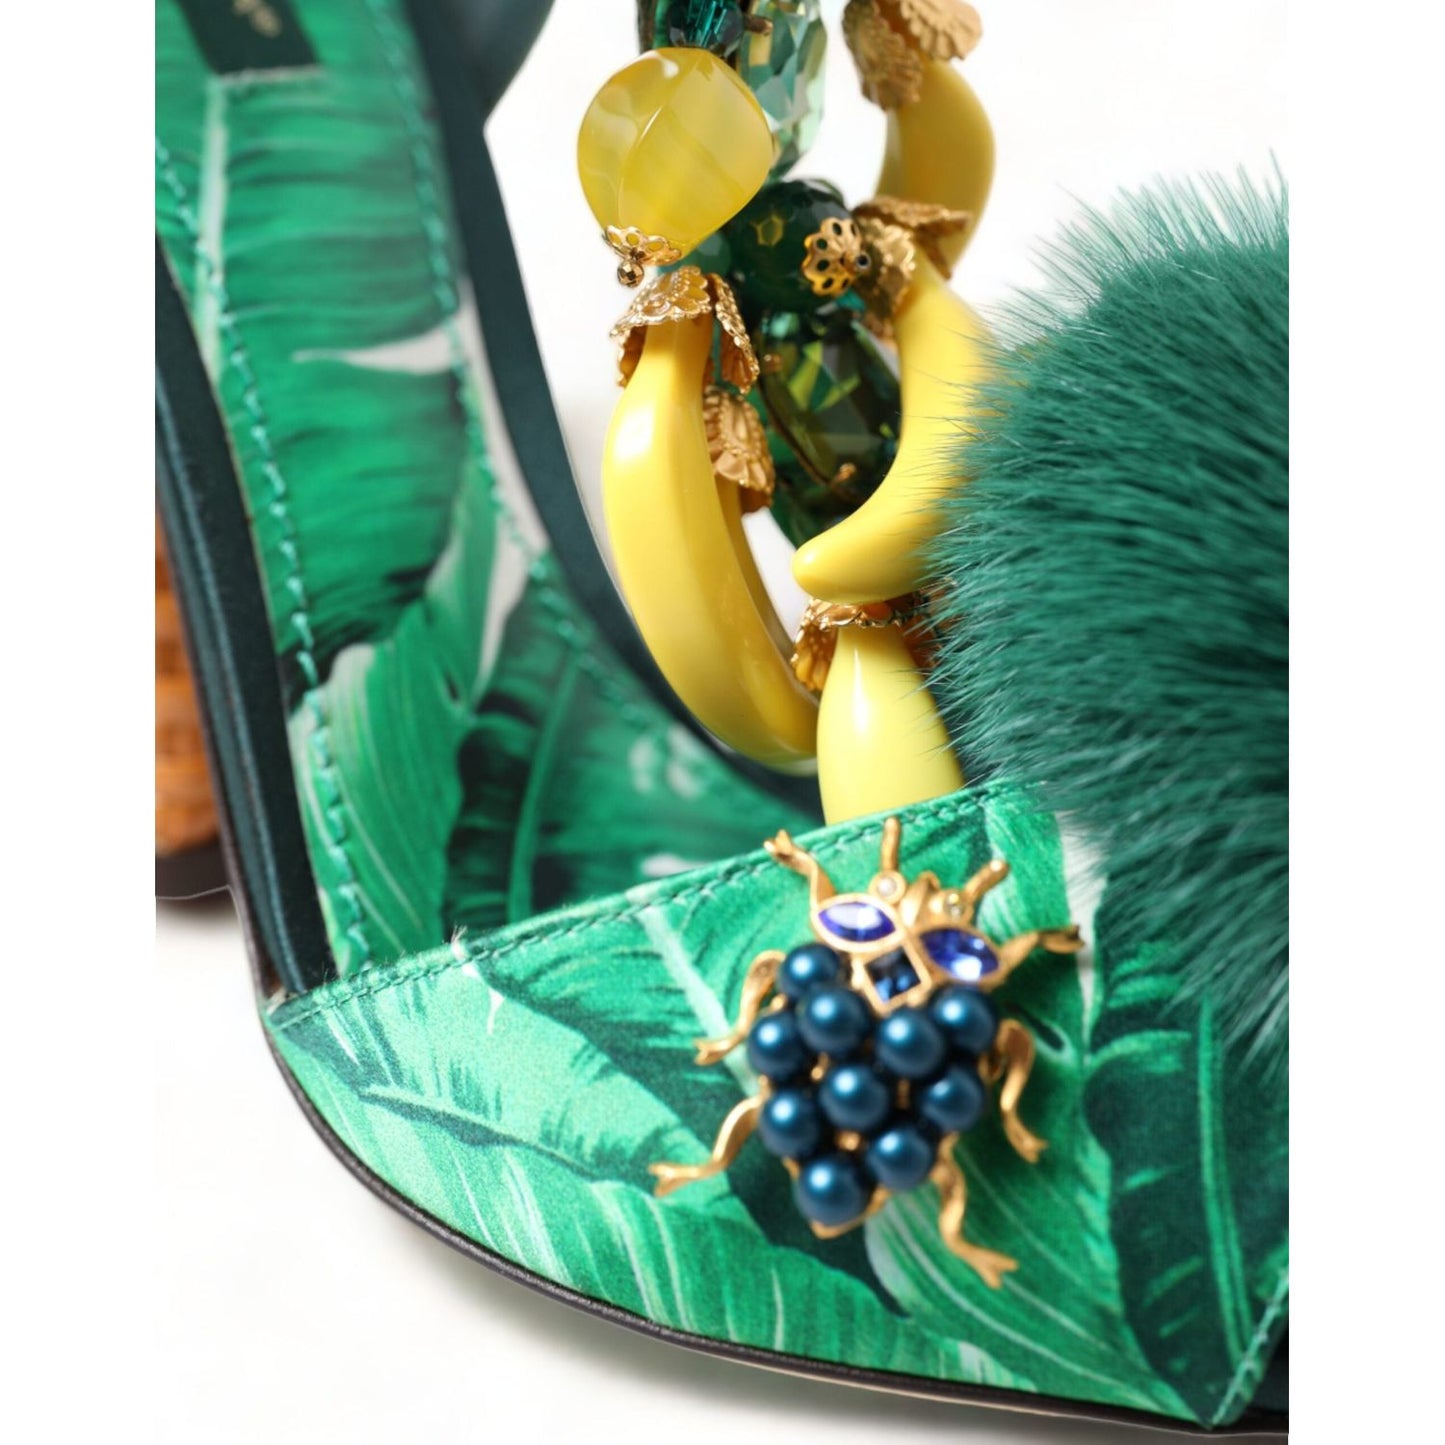 Dolce & Gabbana | Green Crystal Mink Fur T-Strap Sandals| McRichard Designer Brands   